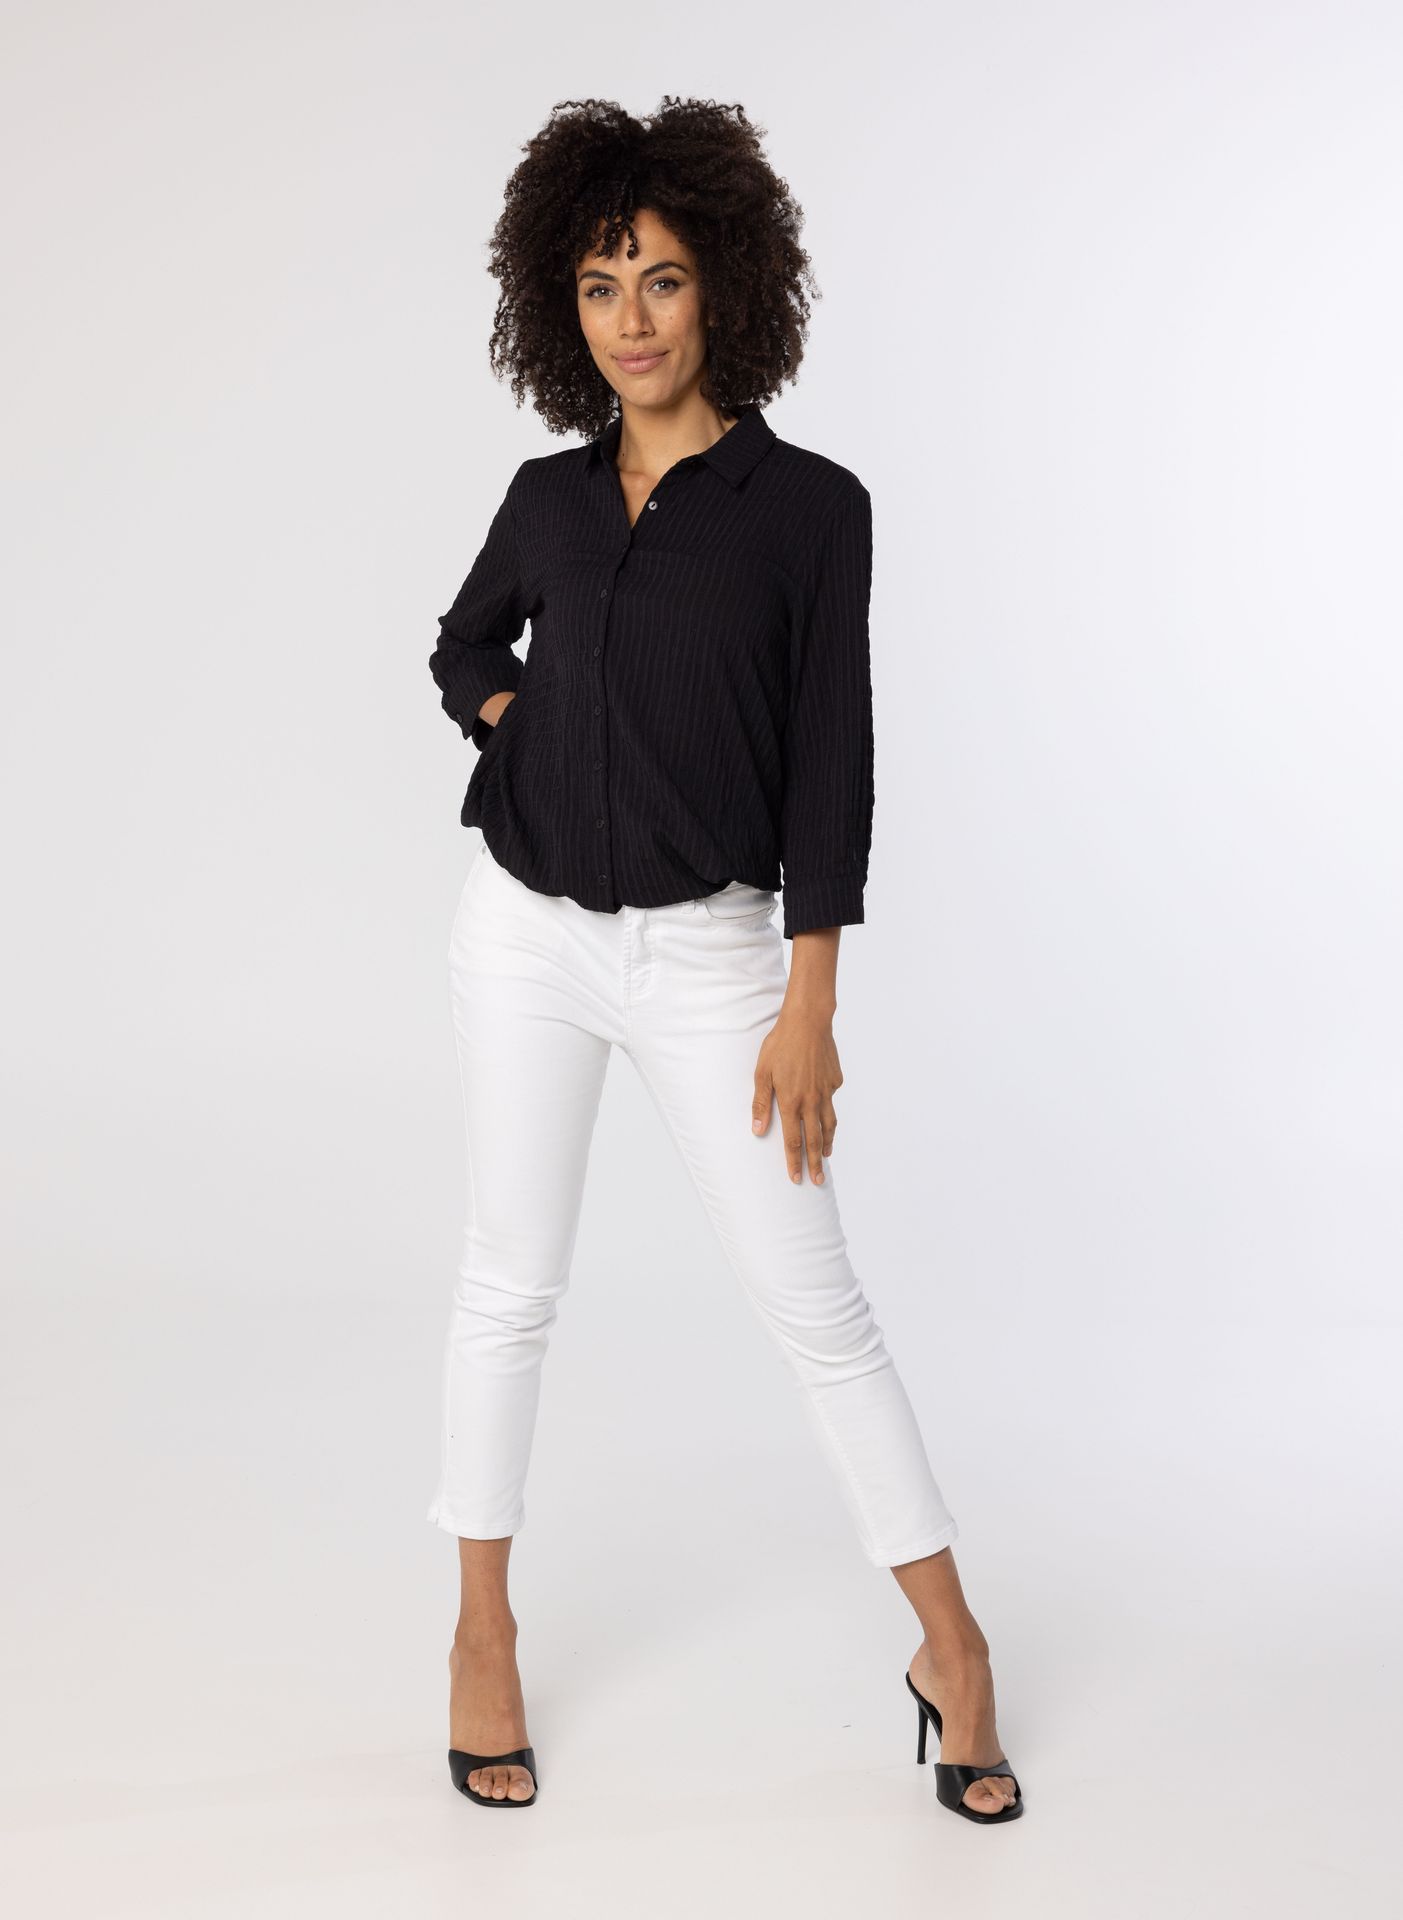 Norah Zwarte blouse met koord black 213899-001